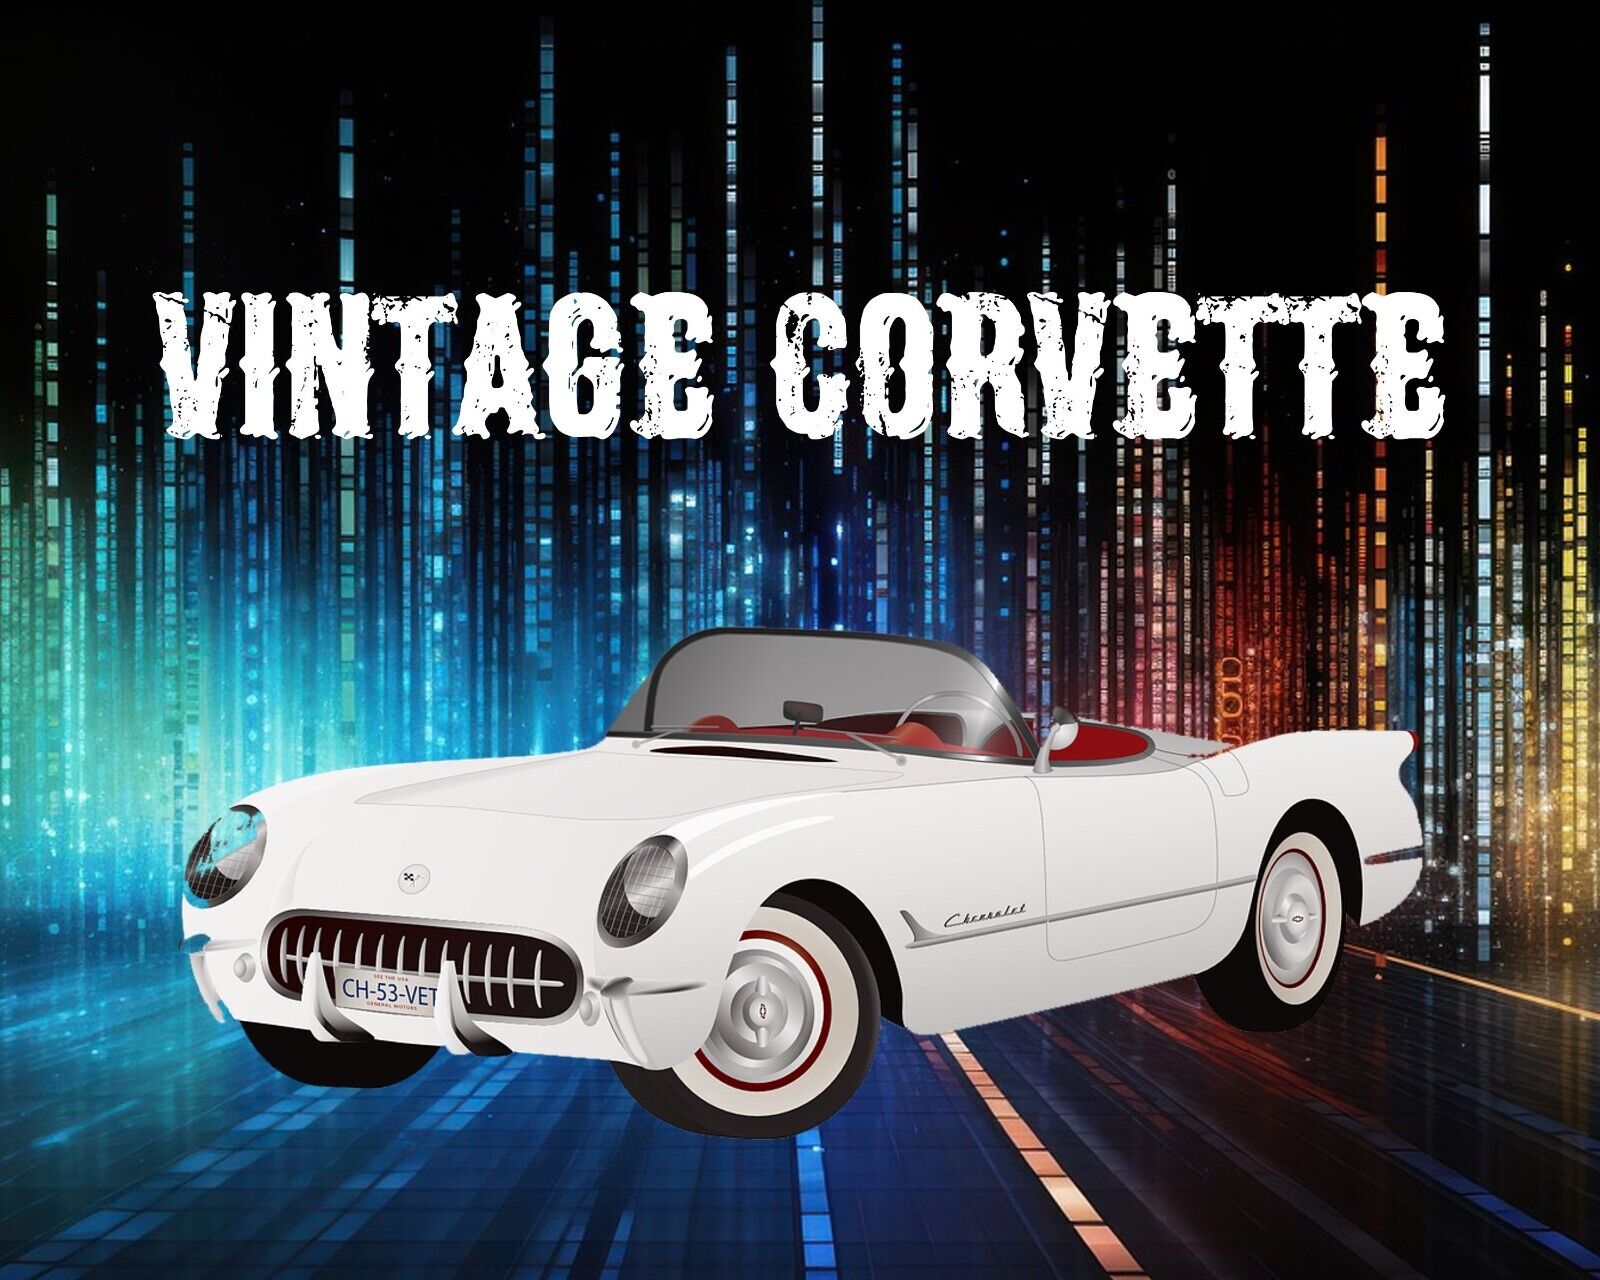 Vintage Corvette Muscle car Mouse Pad Desktop Computer Supplies 7 3/4 x 9